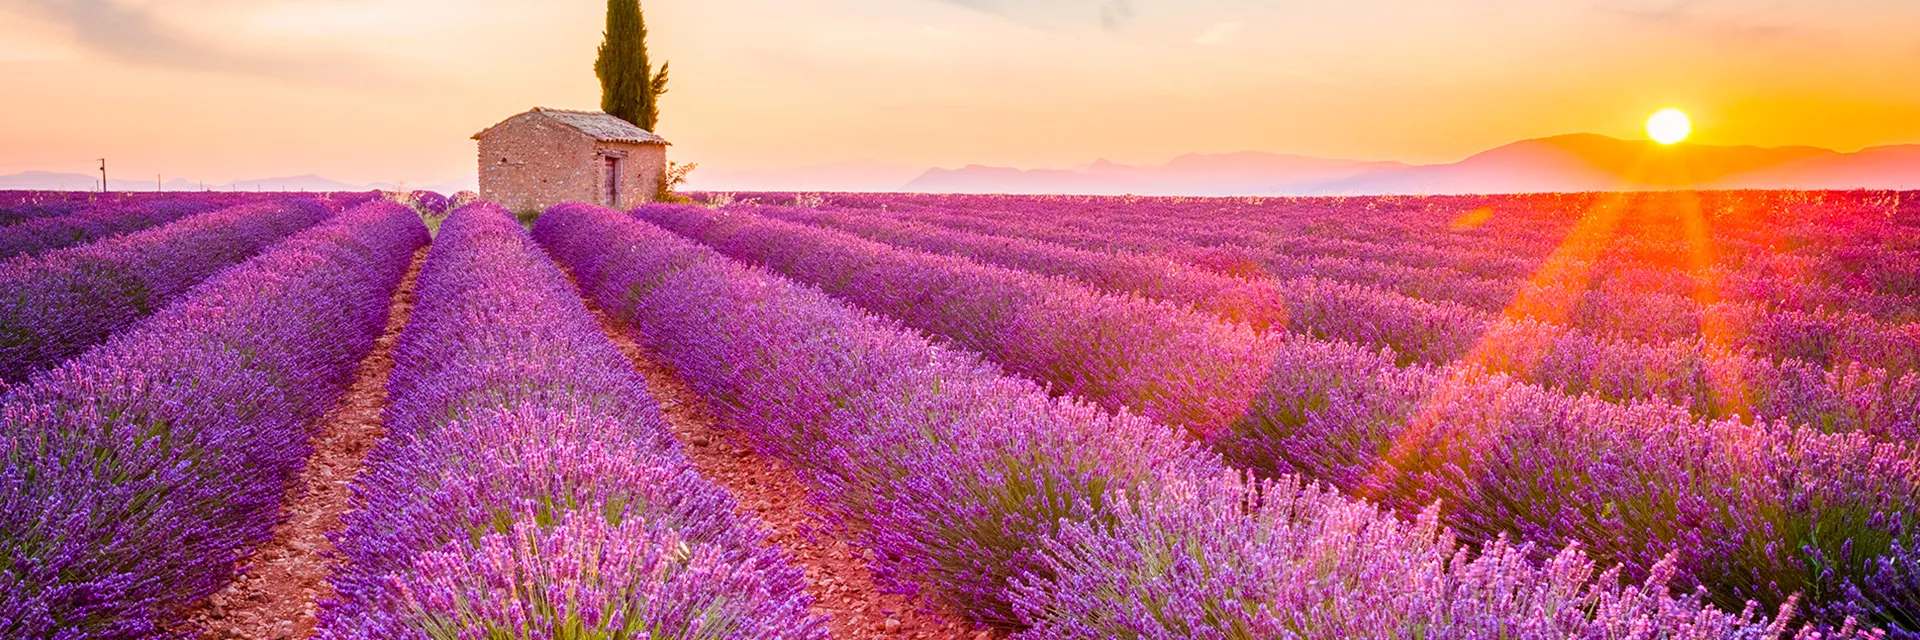 Location vacances en Provence